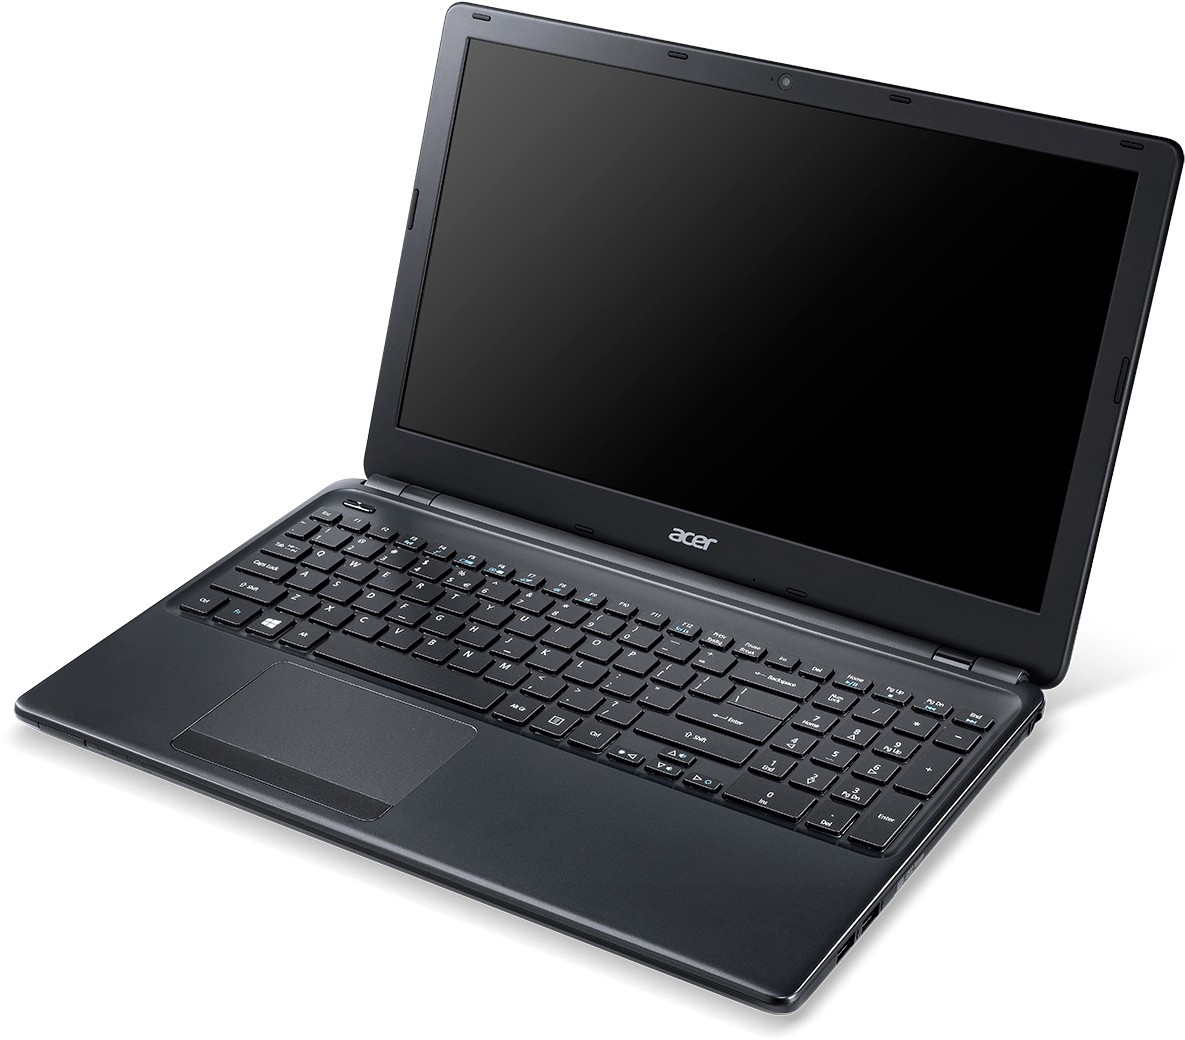 Купить Ноутбук Acer Aspire E1-570g